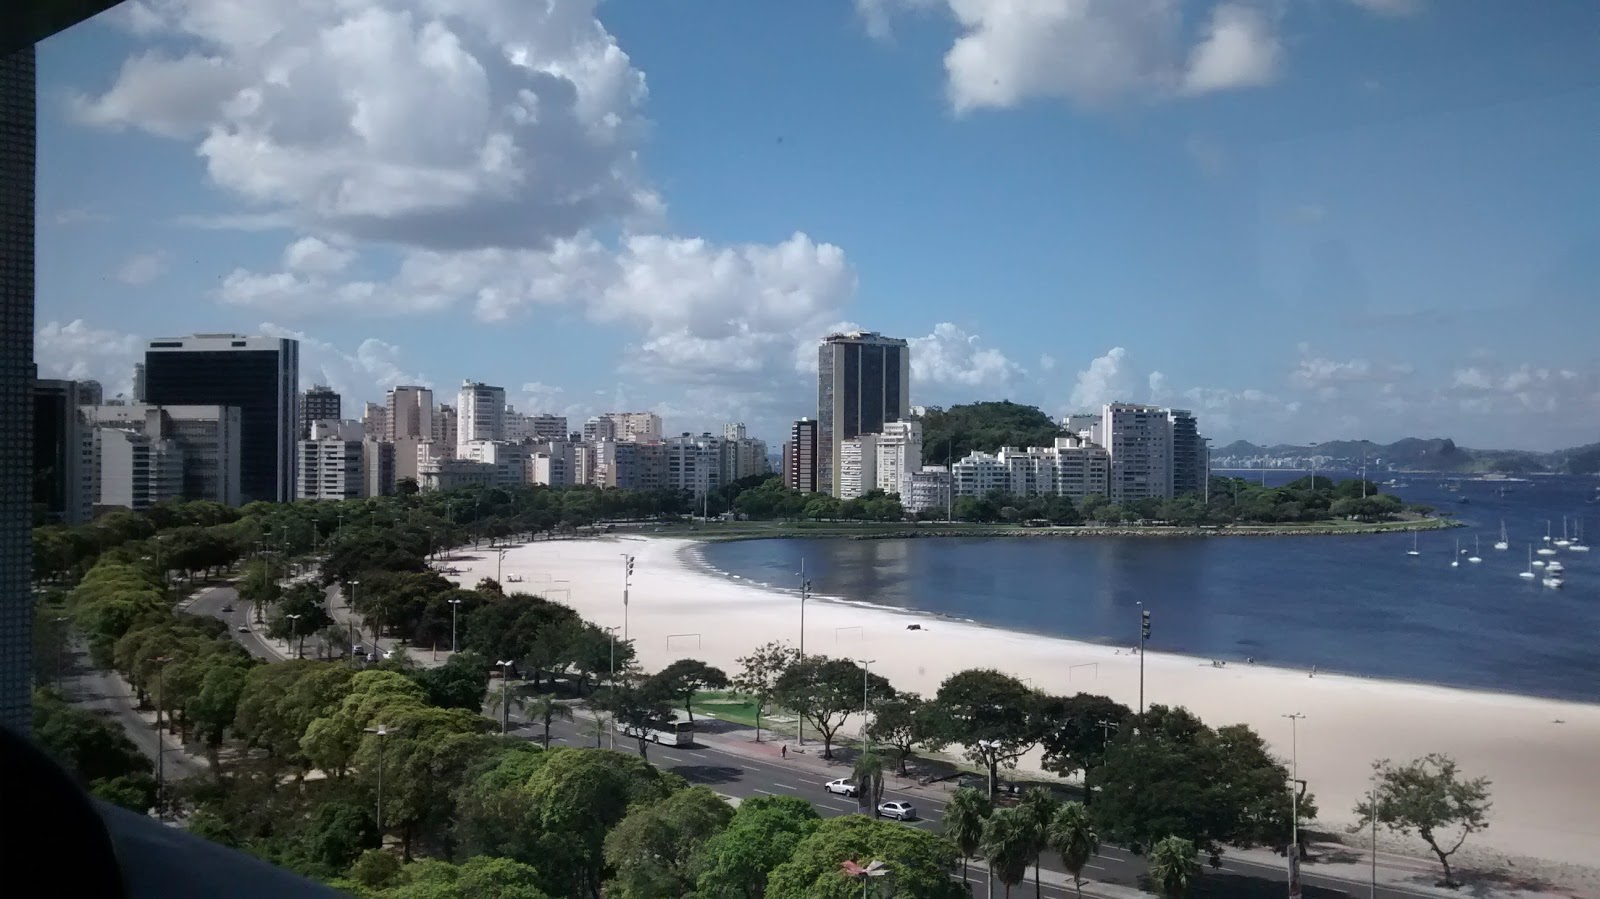 Praia de Botafogo'in fotoğrafı parlak ince kum yüzey ile